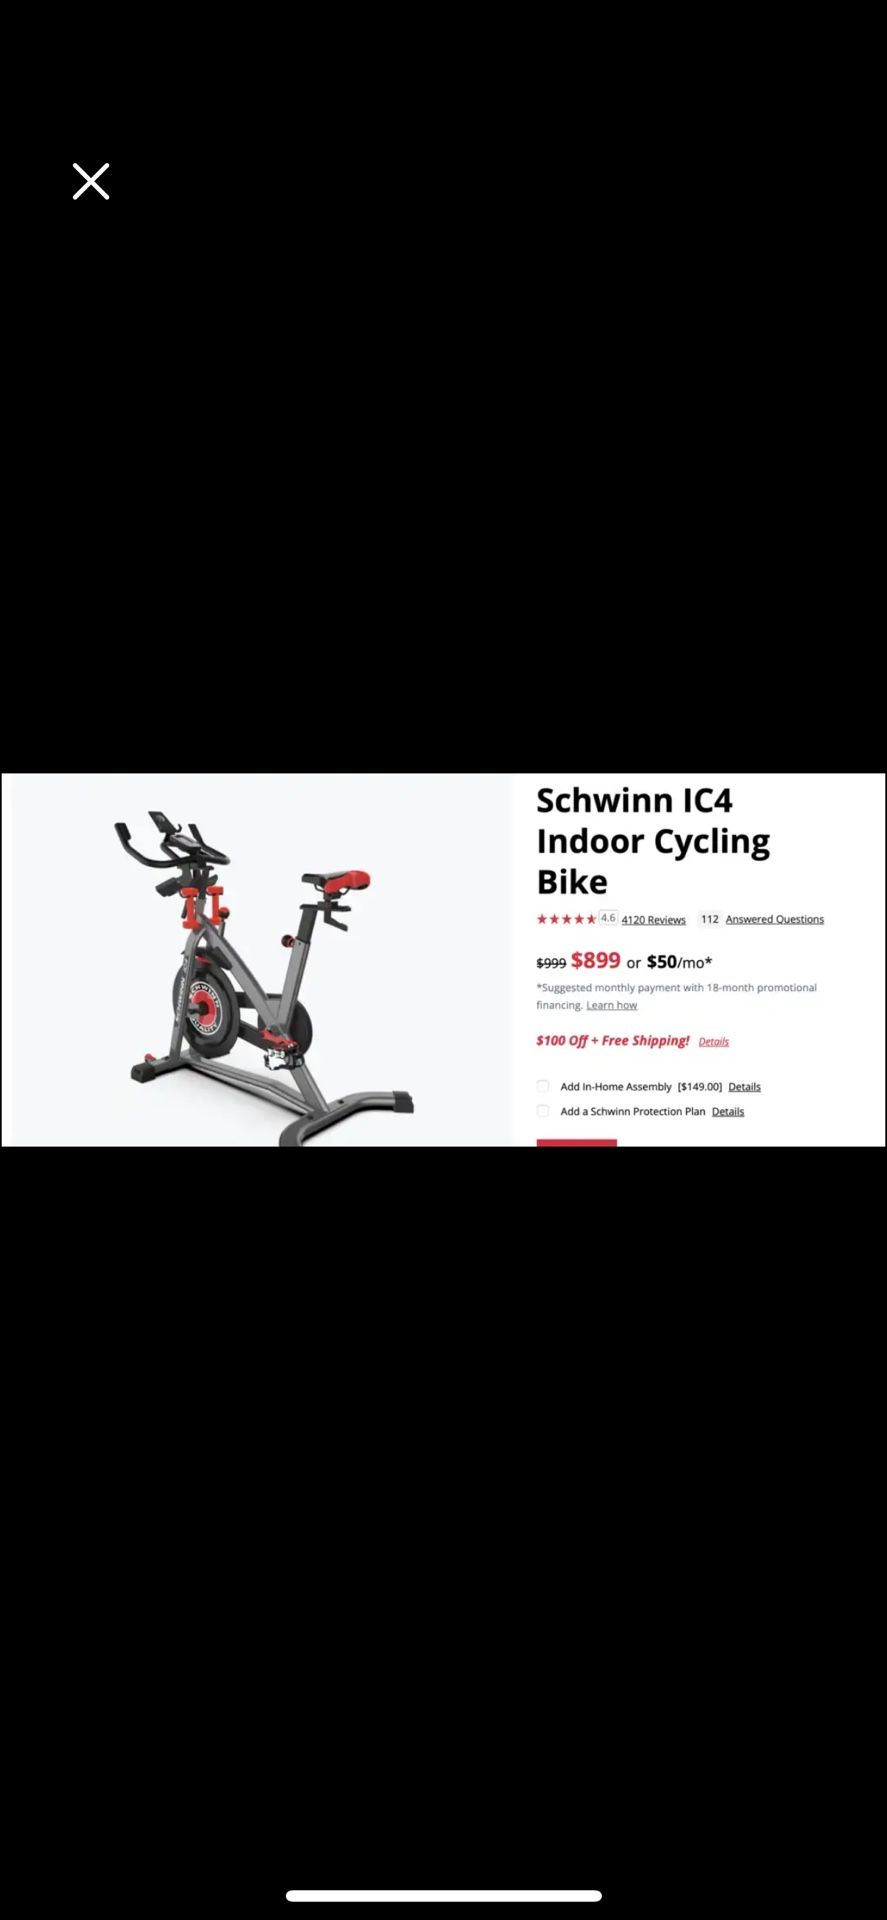 Schwinn IC-4 Bike